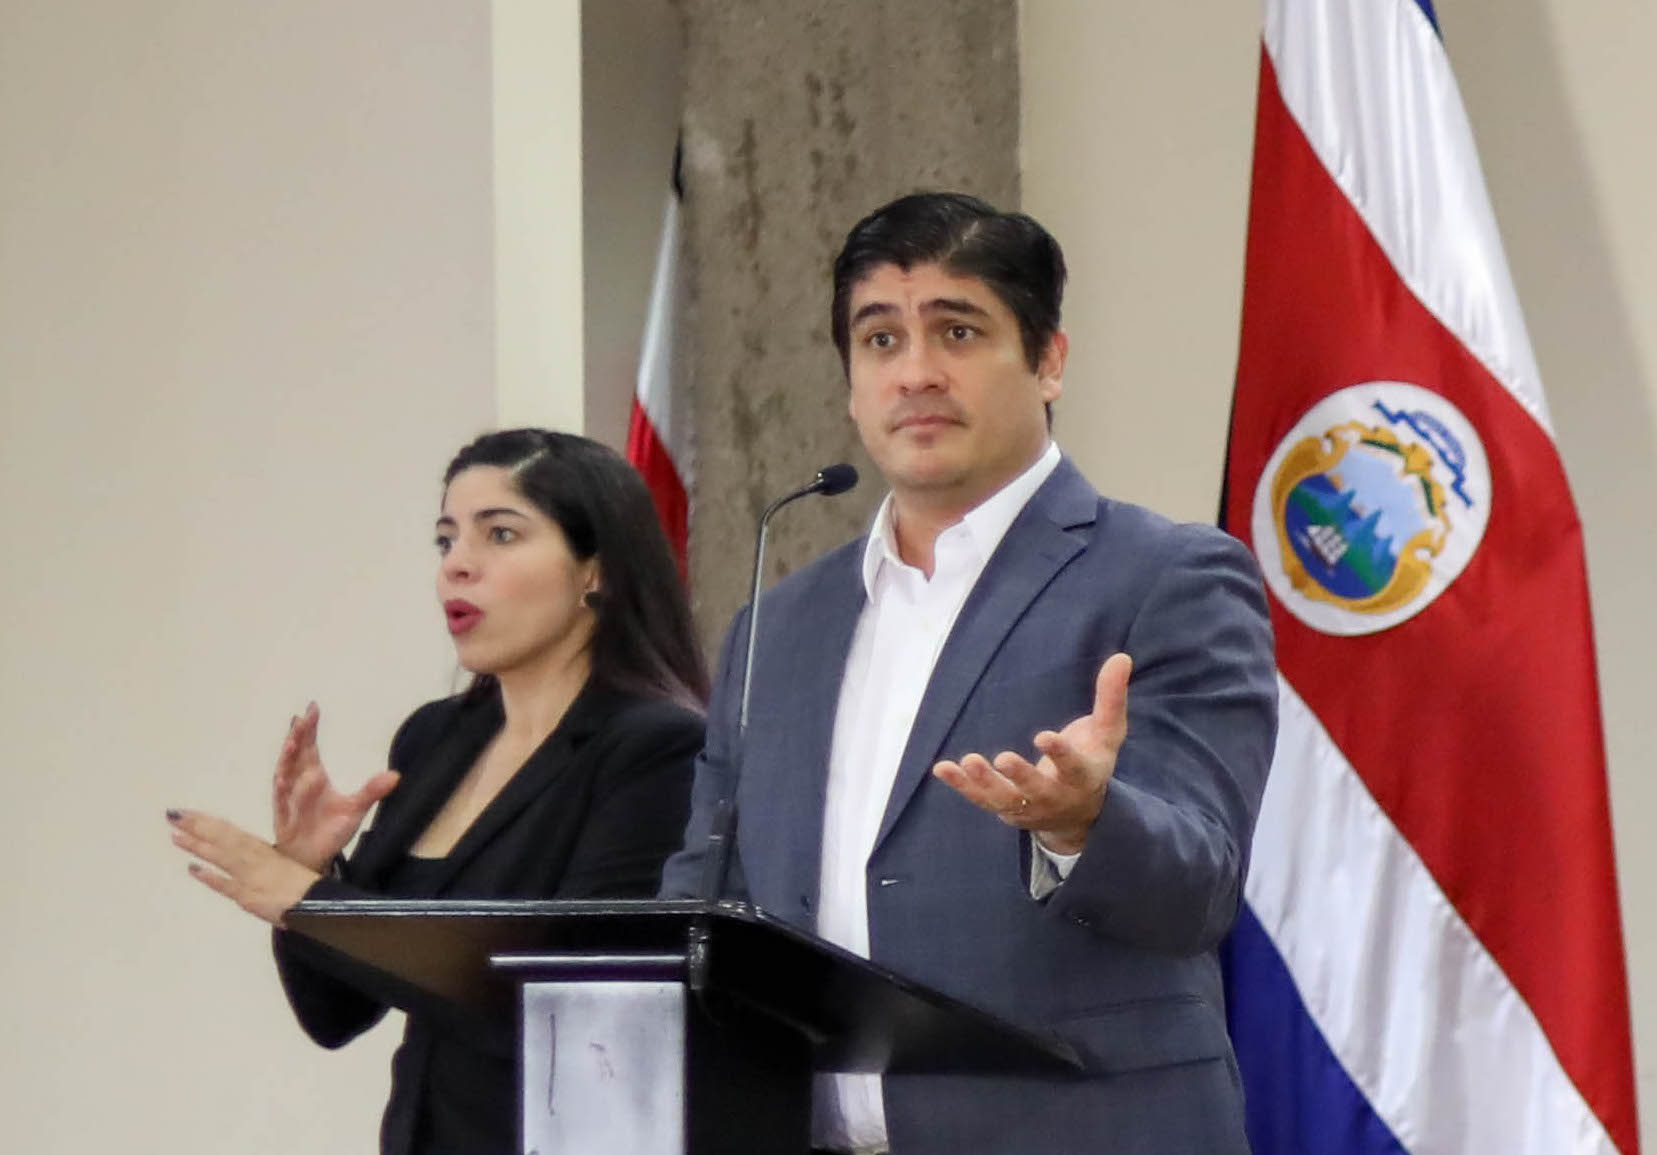 Presidente Alvarado adjudica a su gobierno la mejora en el crecimiento económico